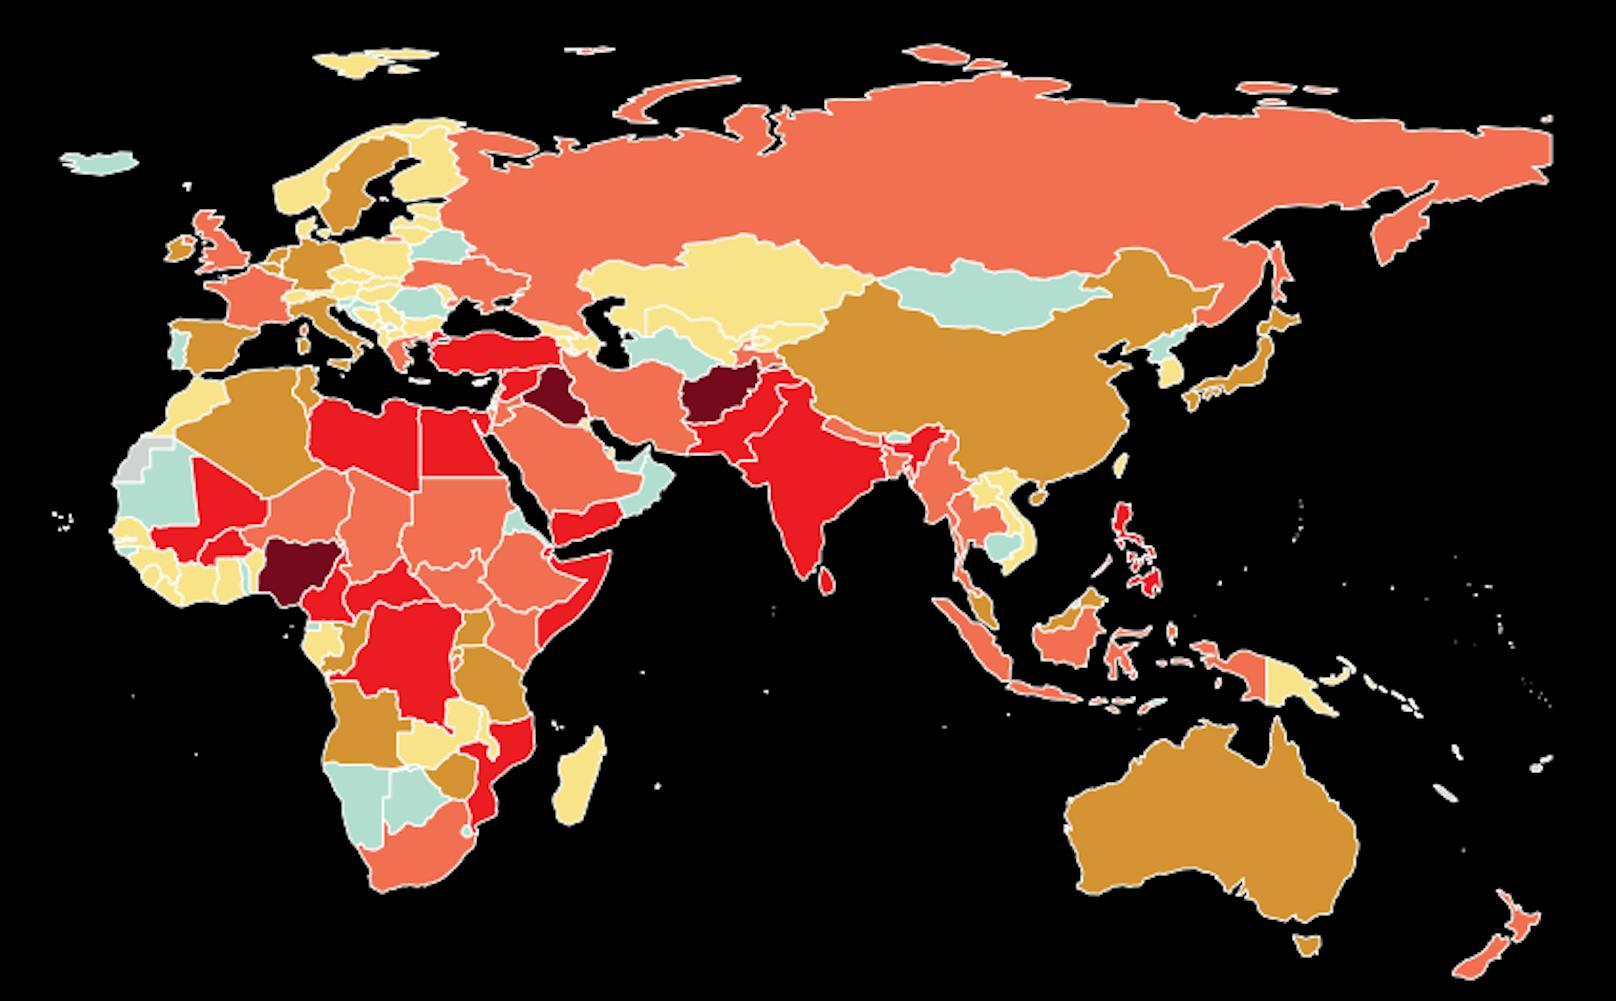 Global Terrorism Index: So stark betroffen sind die Staaten dieser Welt